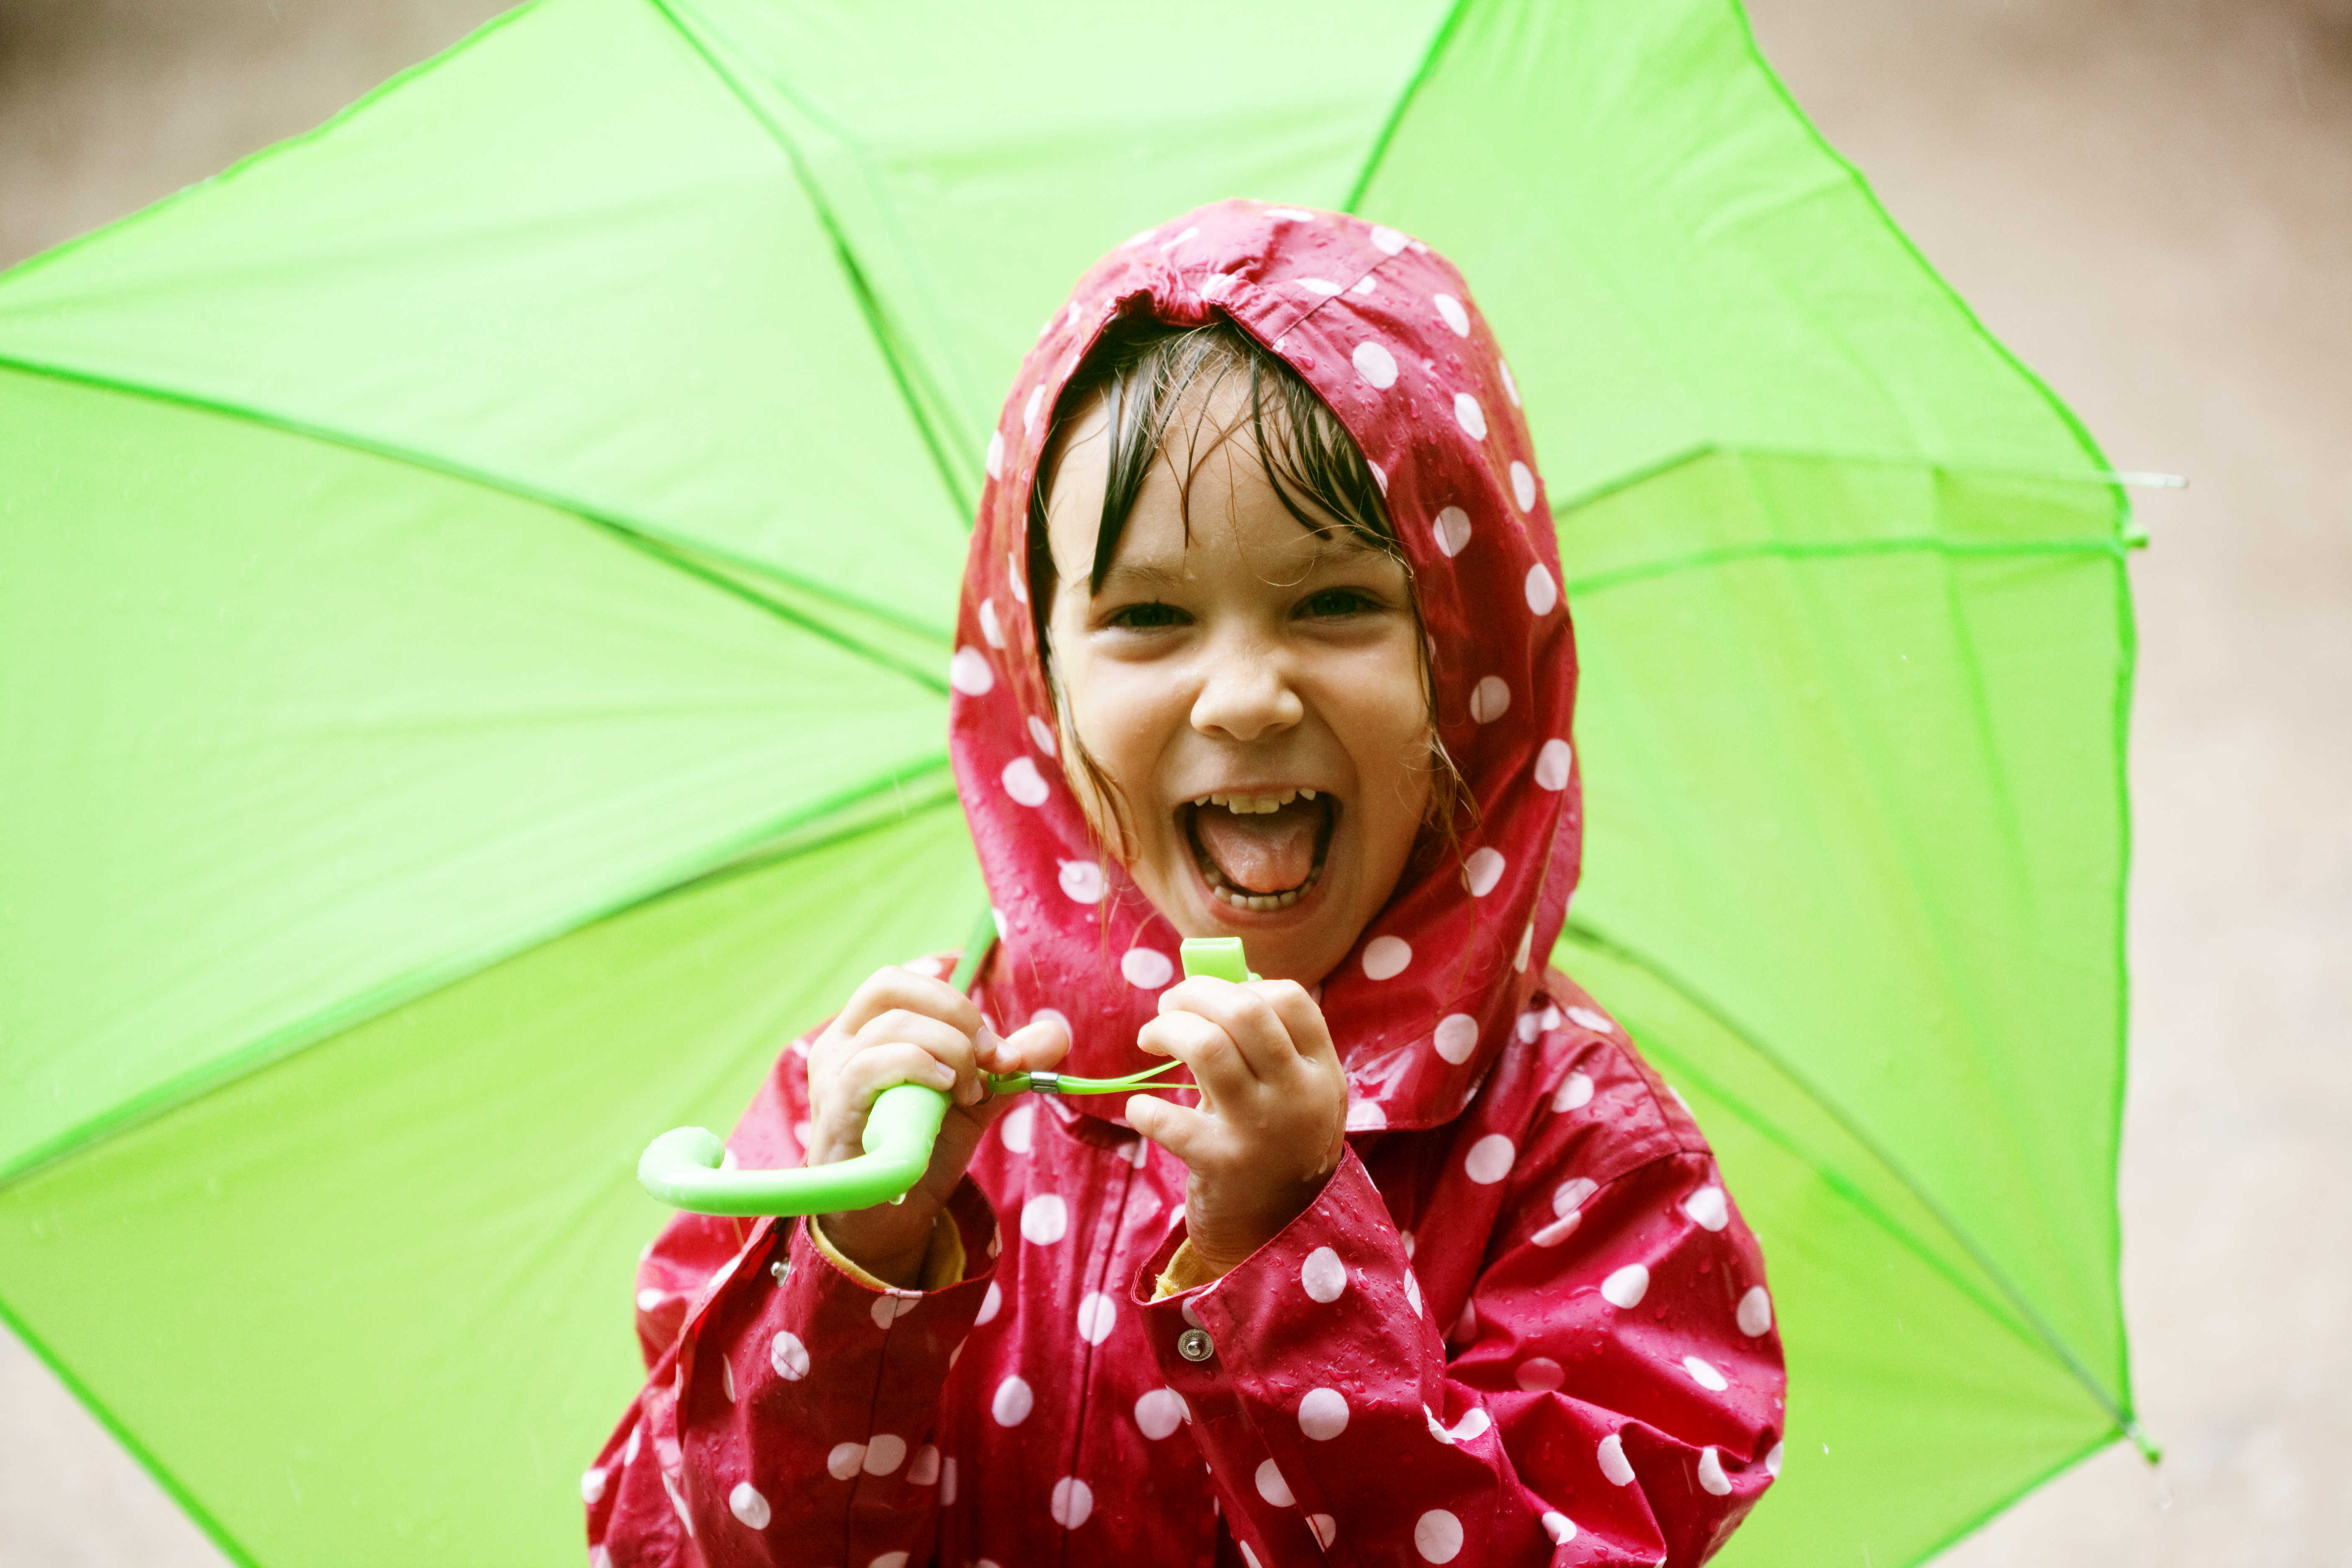 jente med grønn paraply lager grimaser